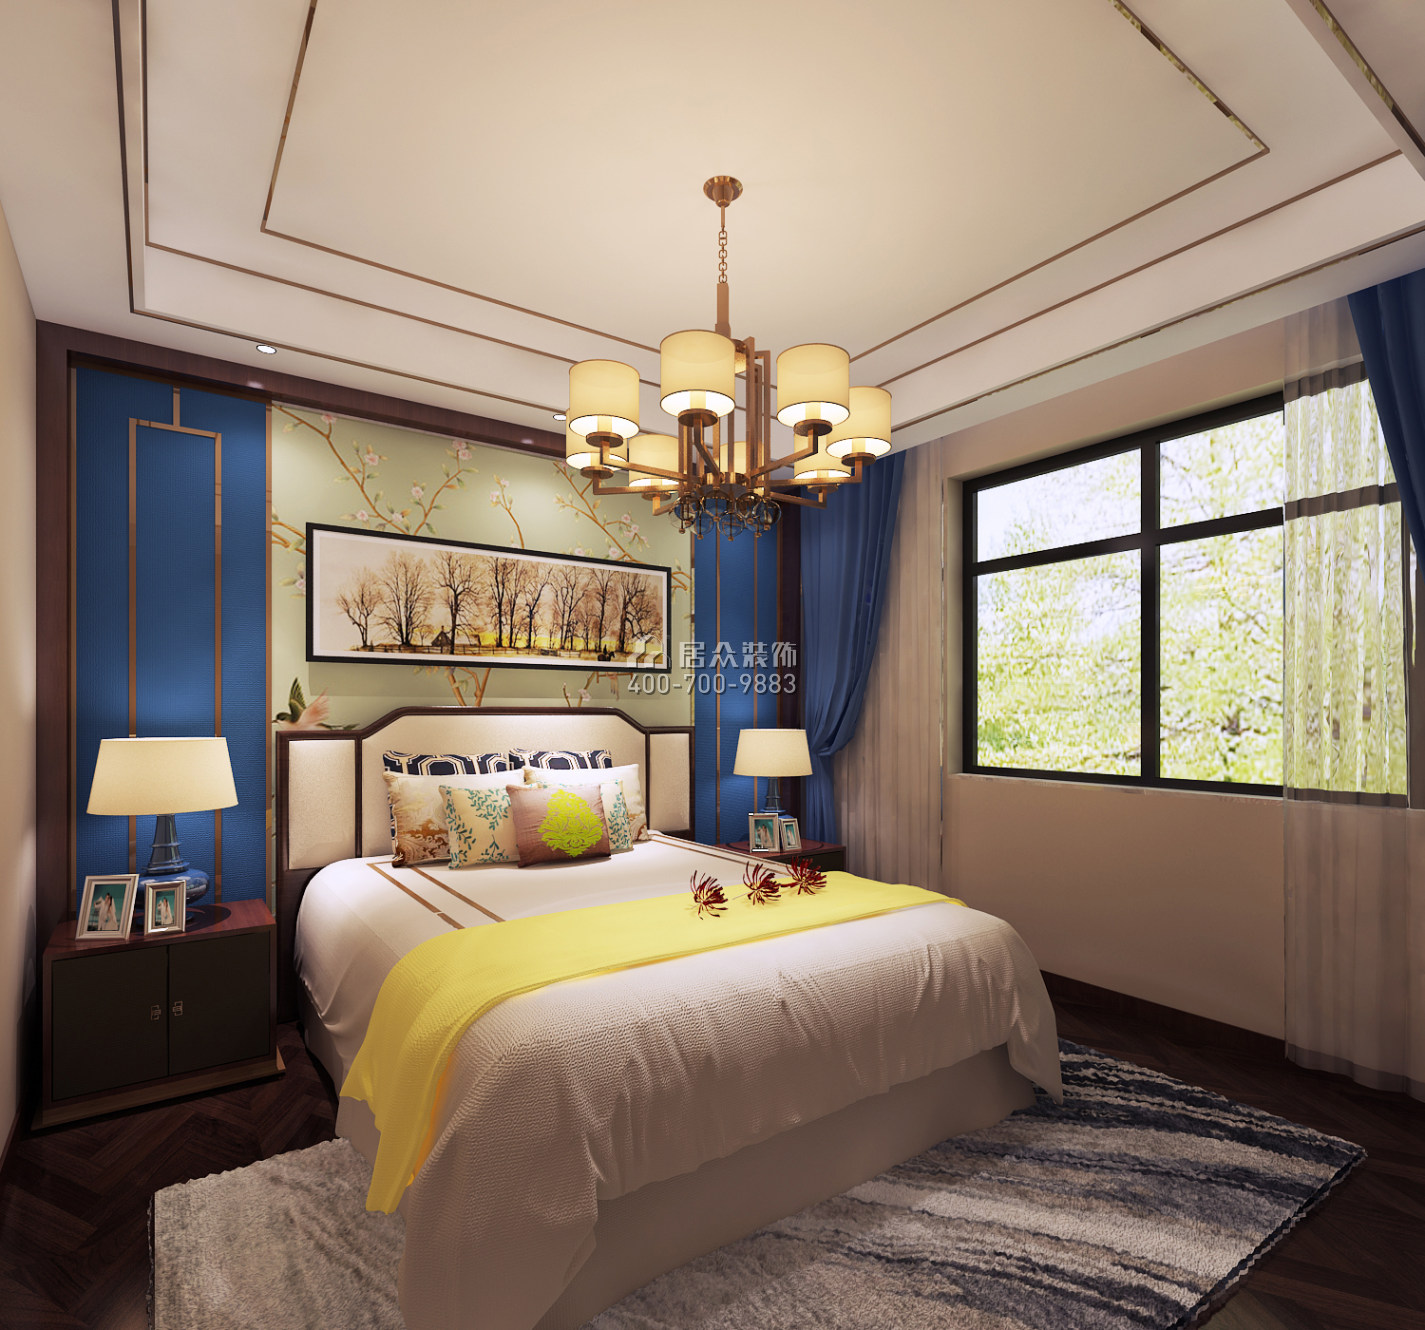 魯能領秀城120平方米中式風格平層戶型臥室裝修效果圖